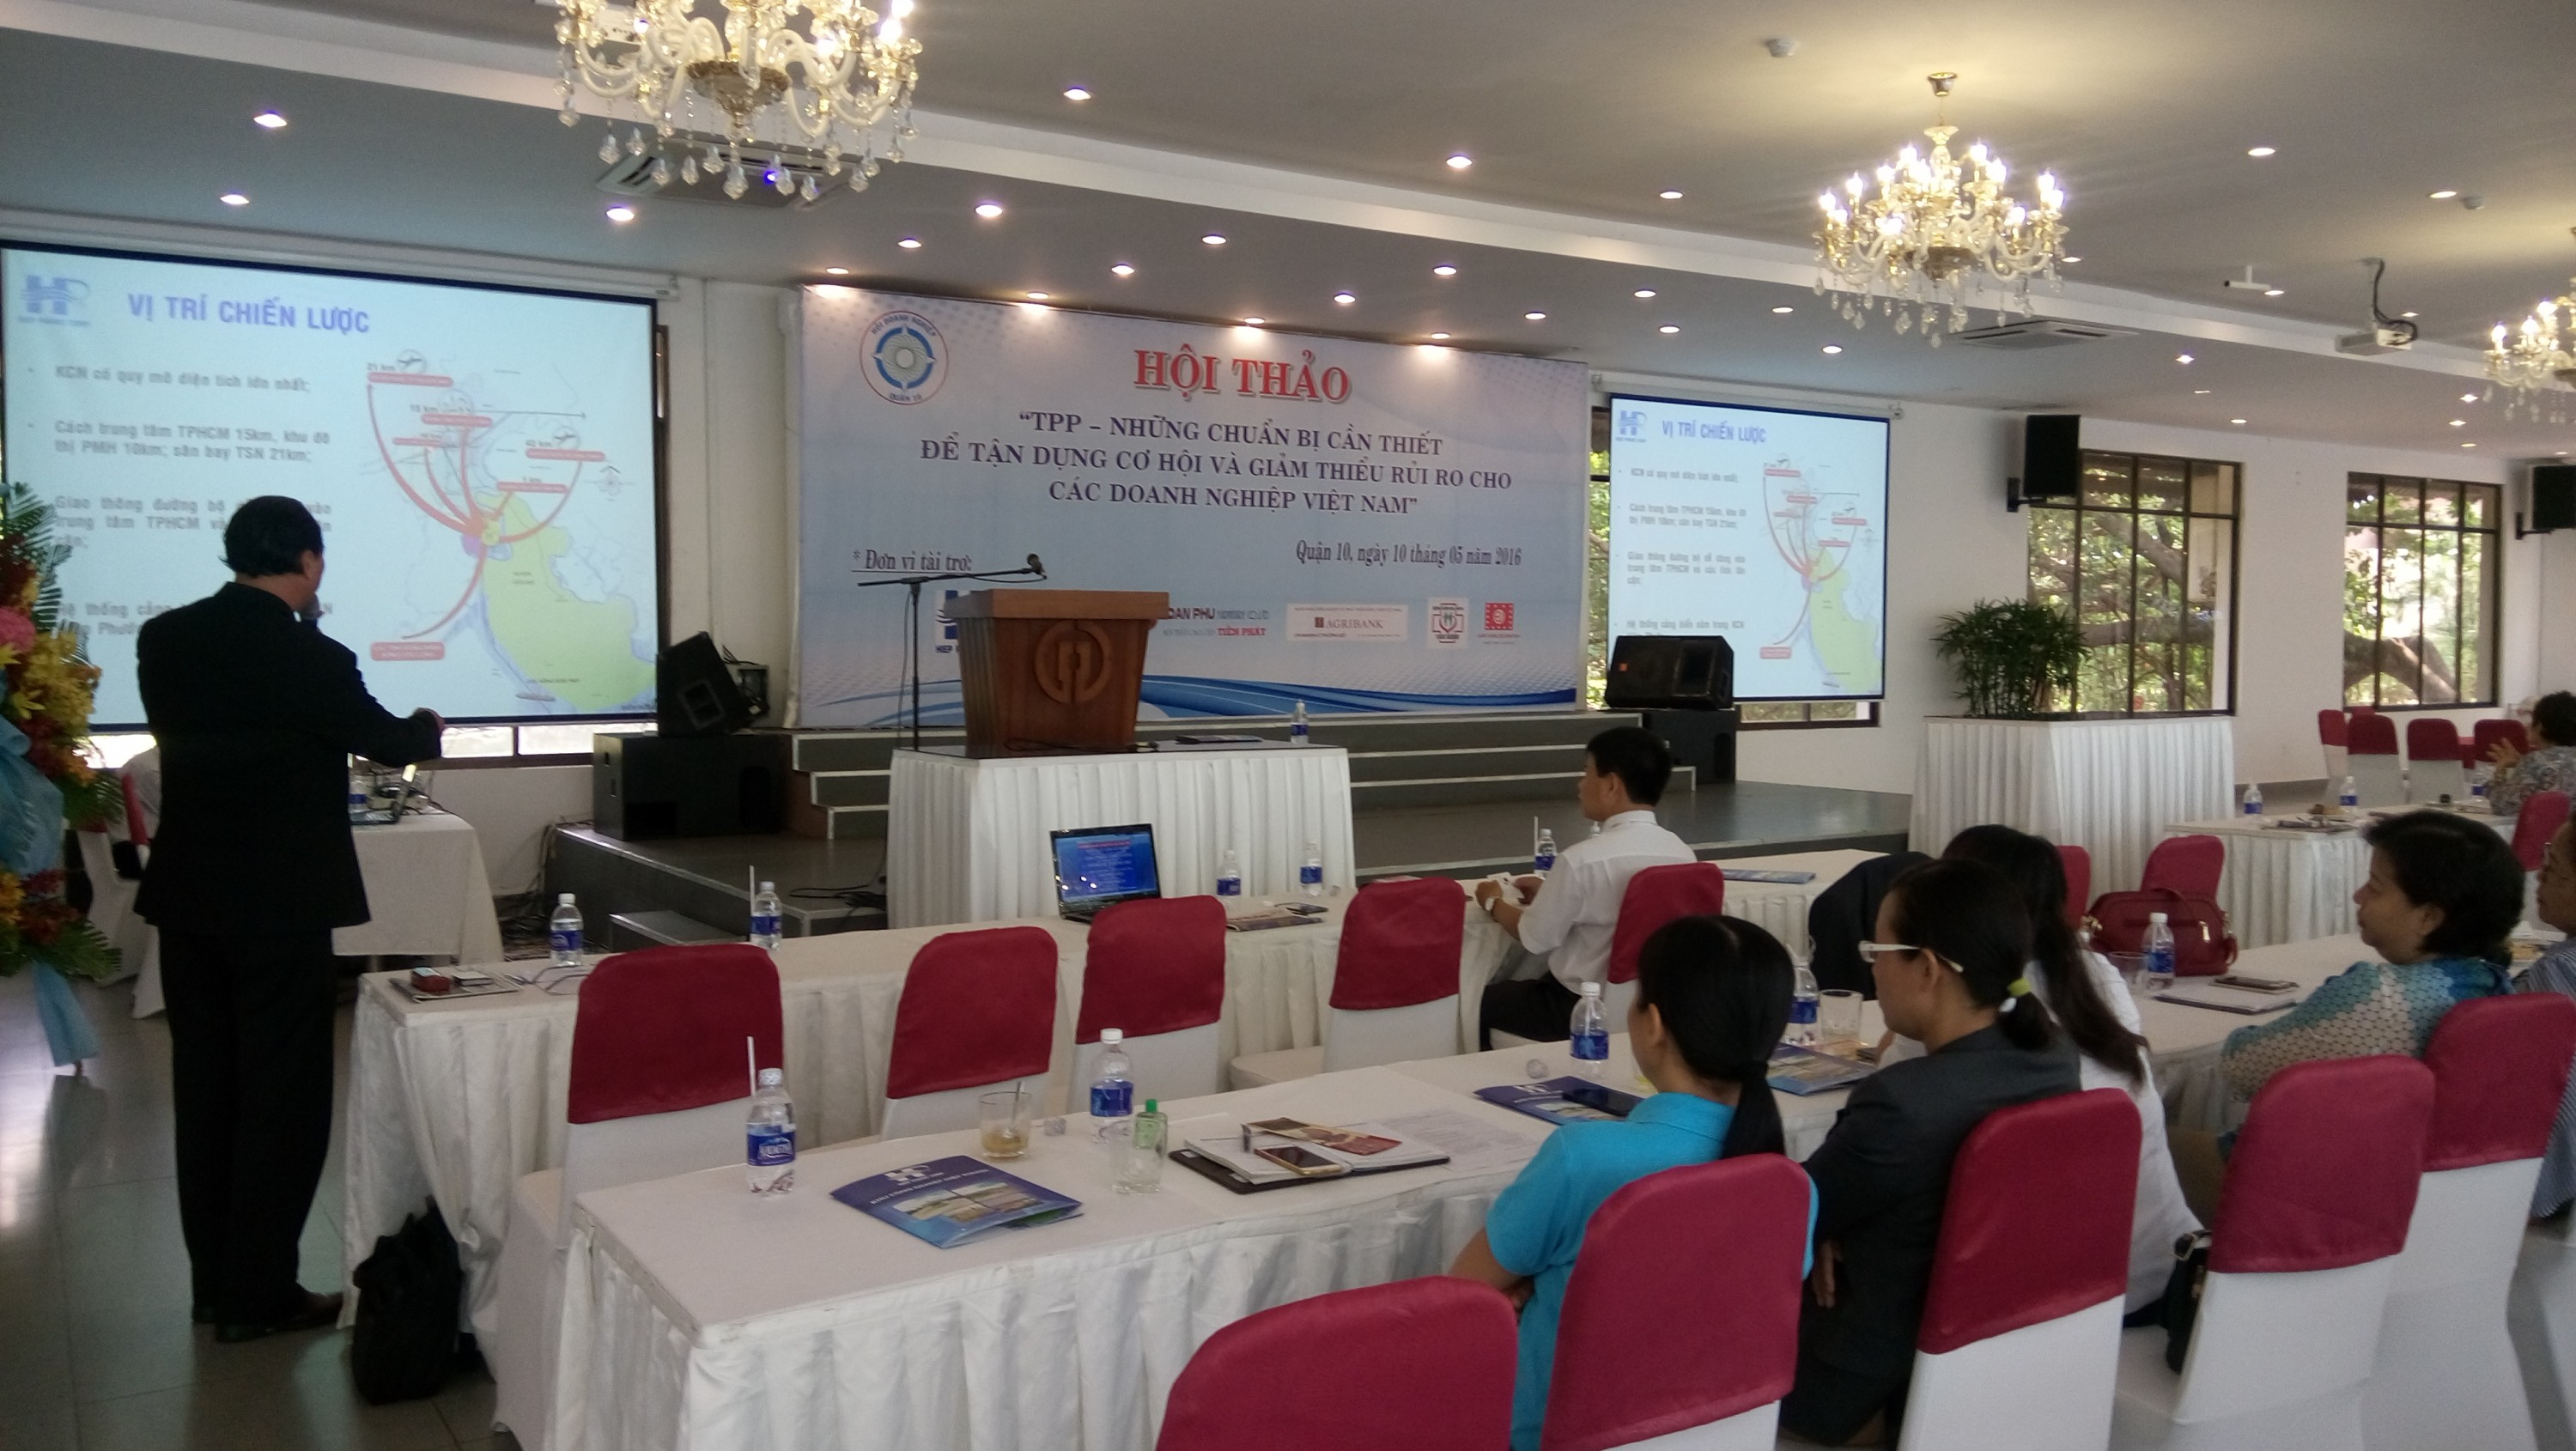 Hội thảo 'TPP - những chuẩn bị cần thiết để tận dụng cơ hội và giảm thiểu rủi ro cho các Doanh nghiệp Việt Nam'